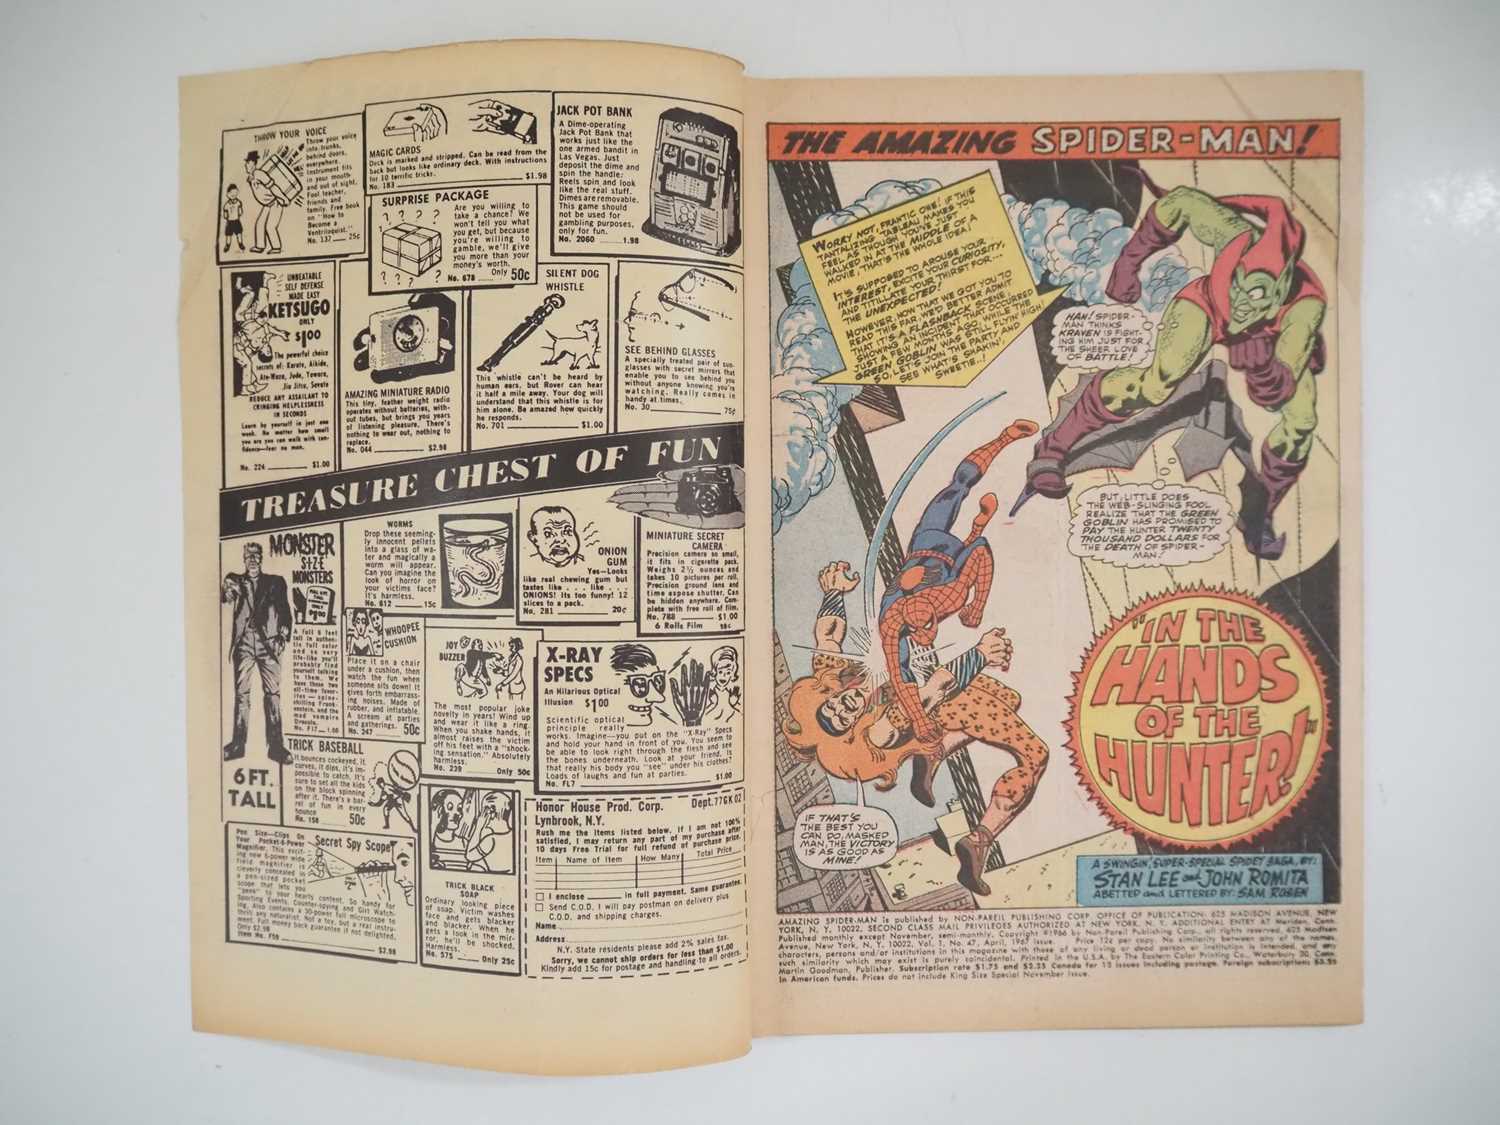 AMAZING SPIDER-MAN #47 - (1967 - MARVEL - UK Price Variant) - Kraven the Hunter, Green Goblin - Image 3 of 9